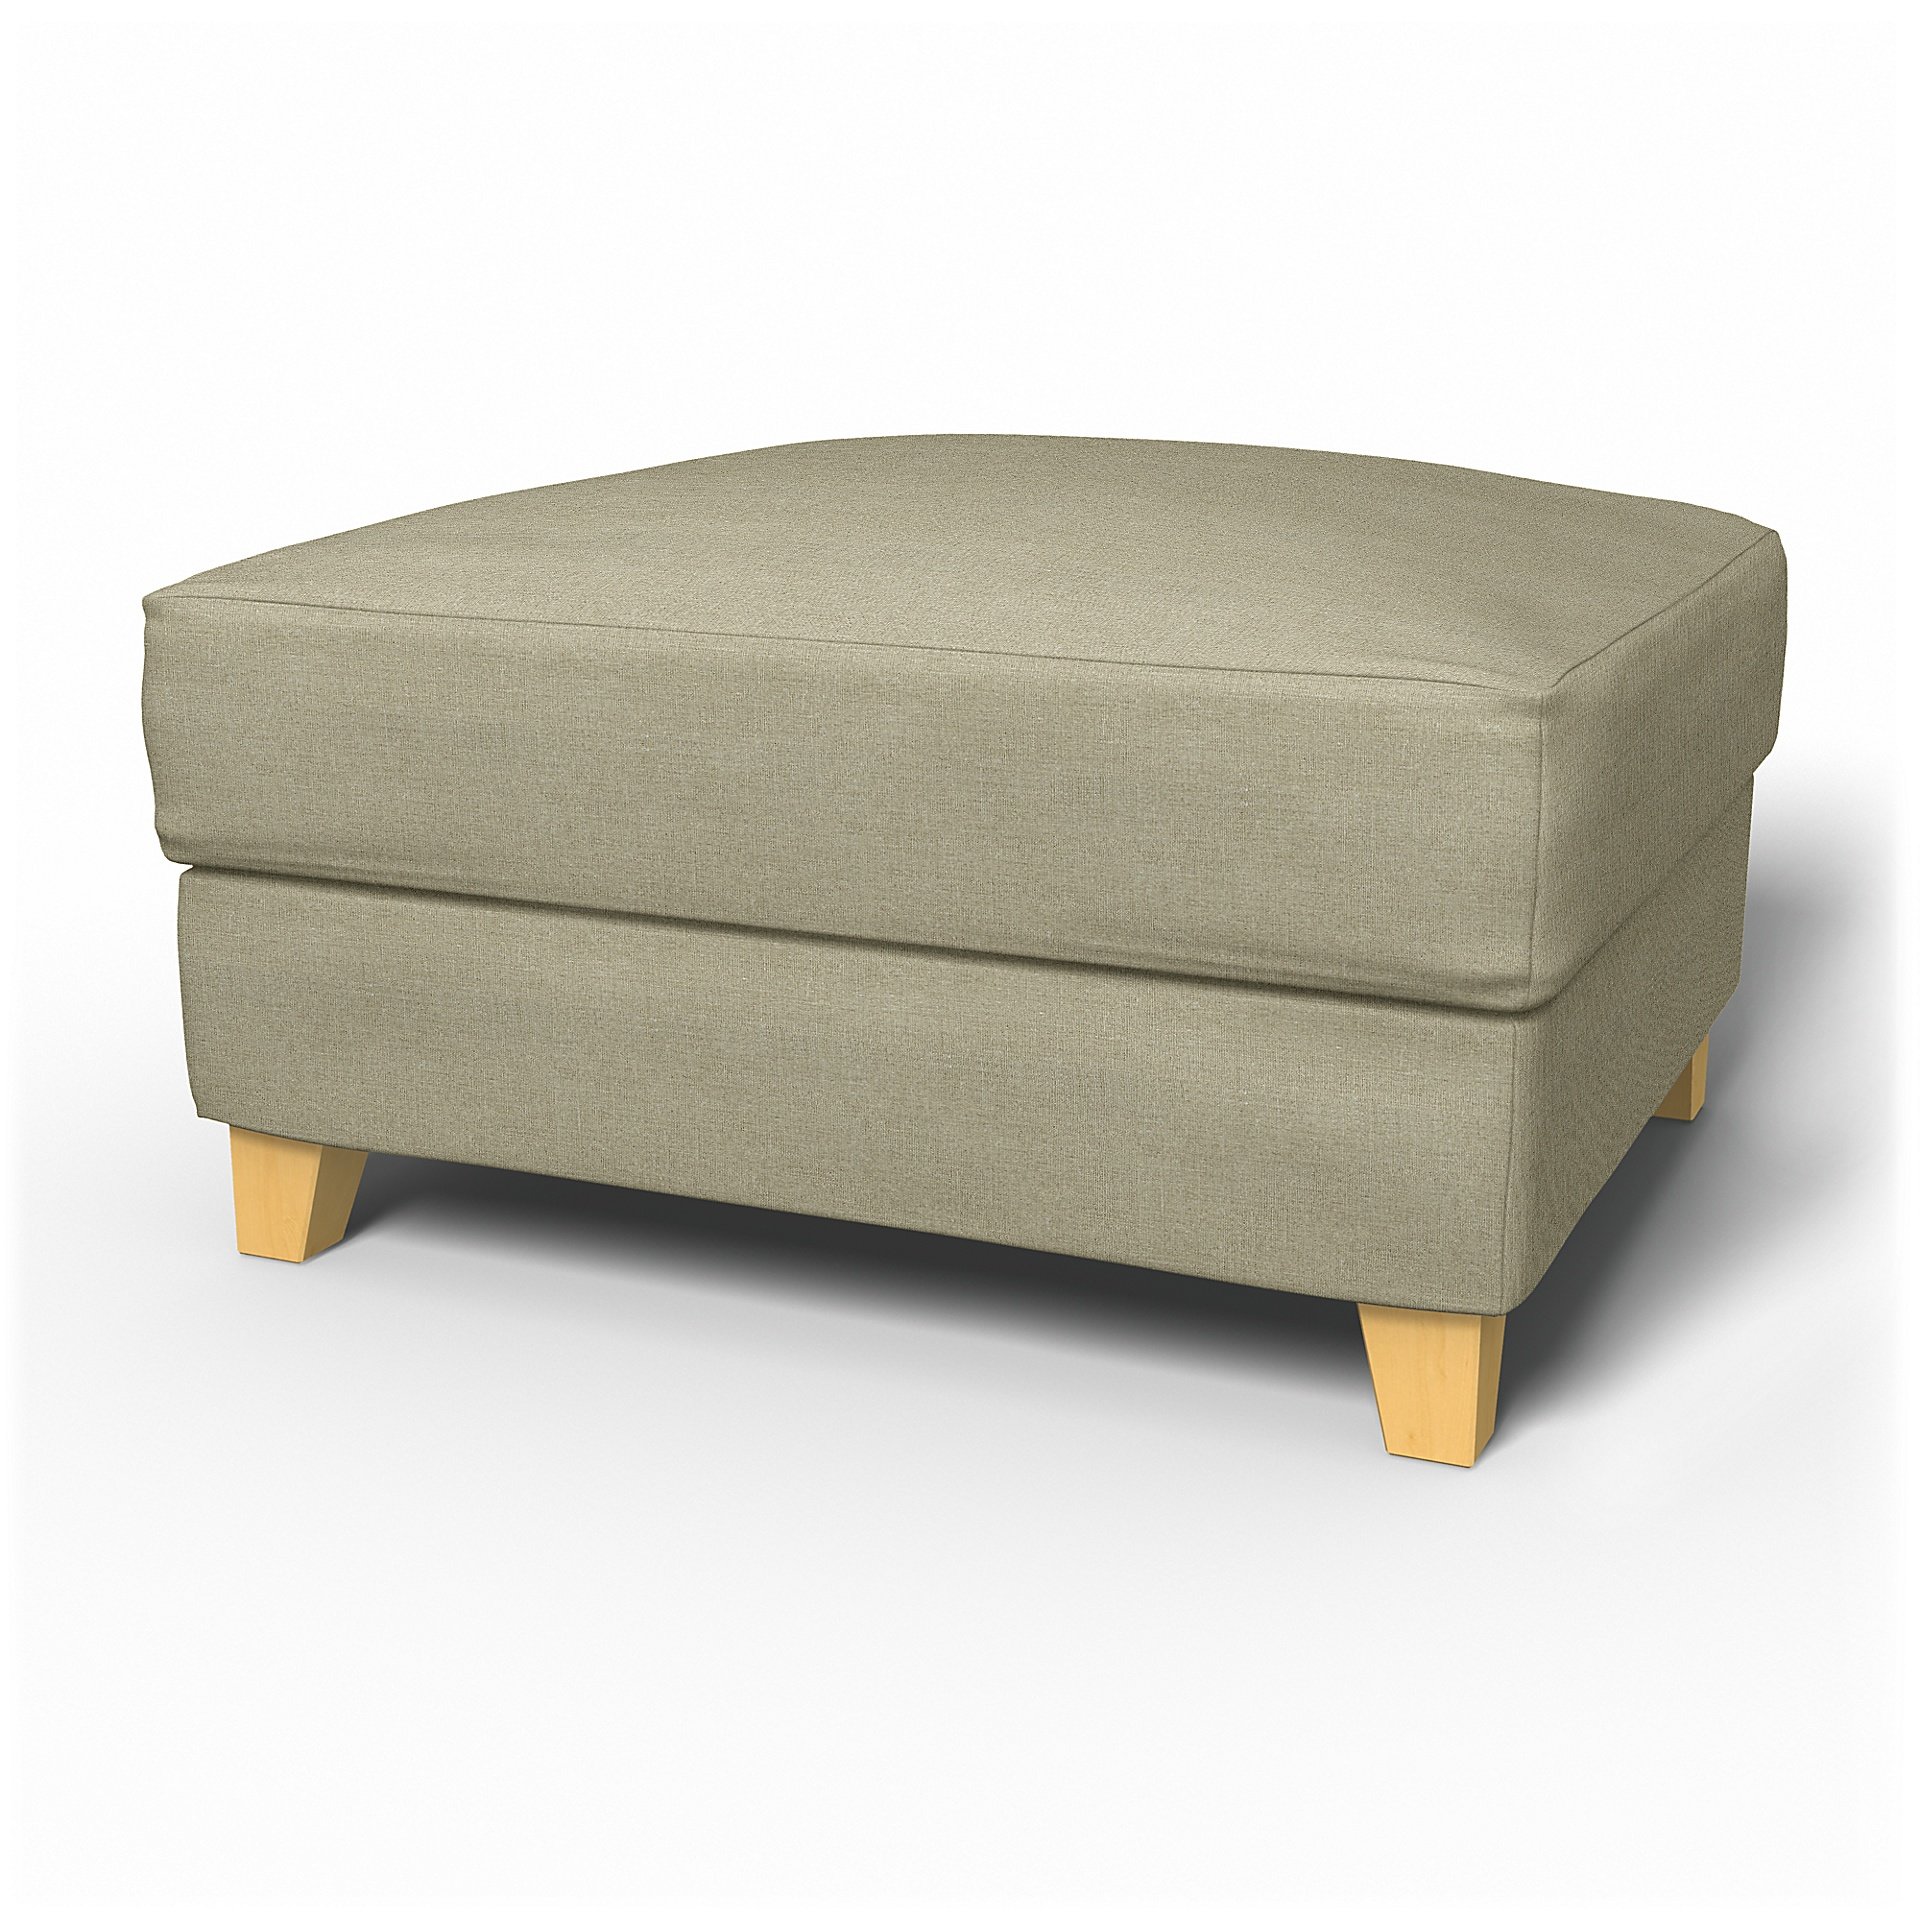 IKEA - Backa Footstool Cover, Pebble, Linen - Bemz